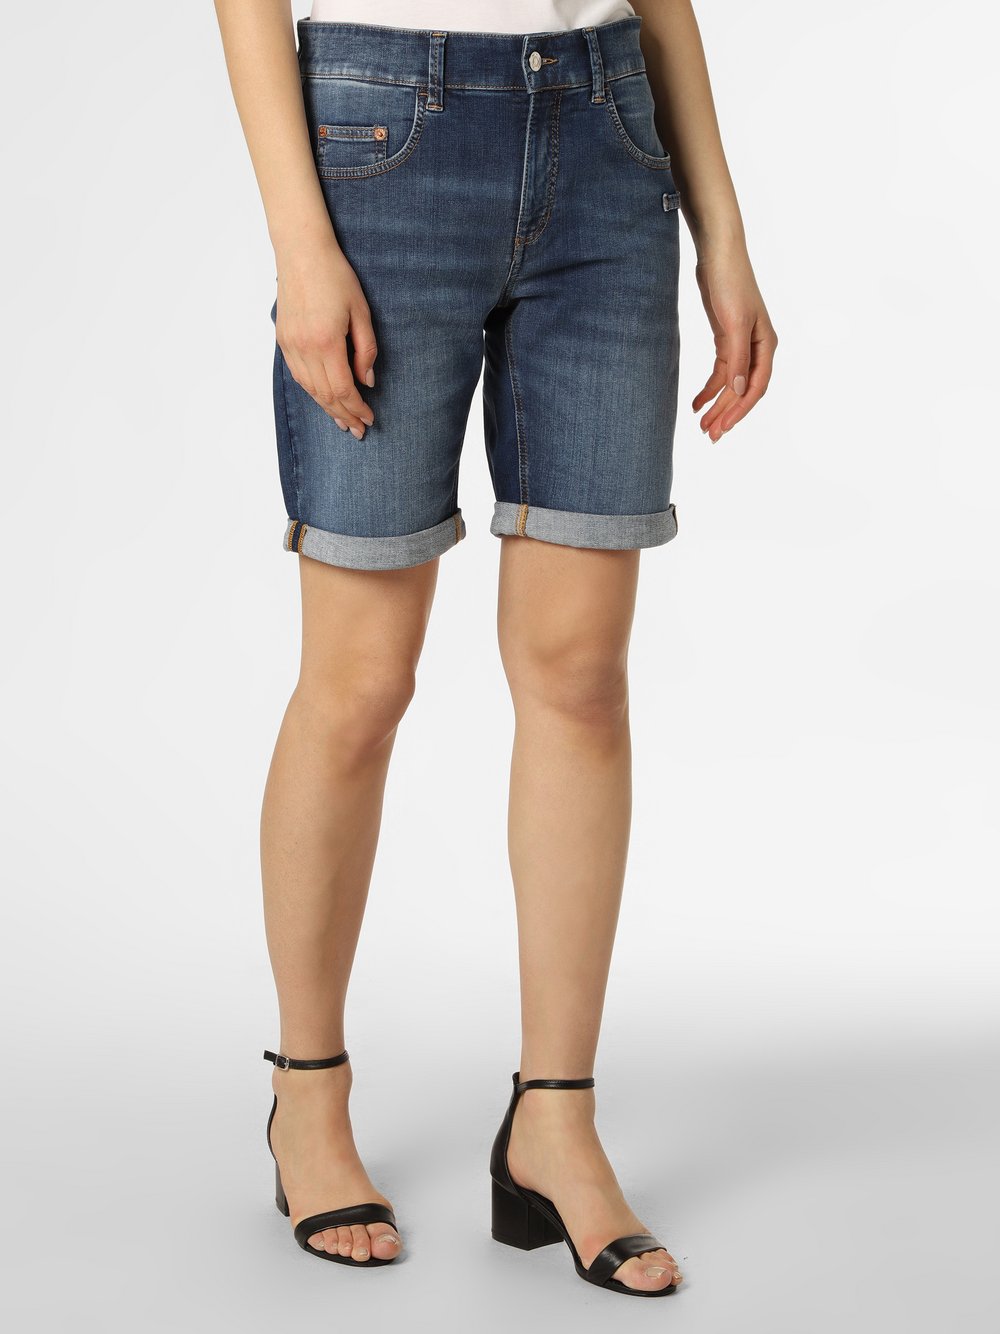 MAC - Damskie spodenki jeansowe – Mina, niebieski